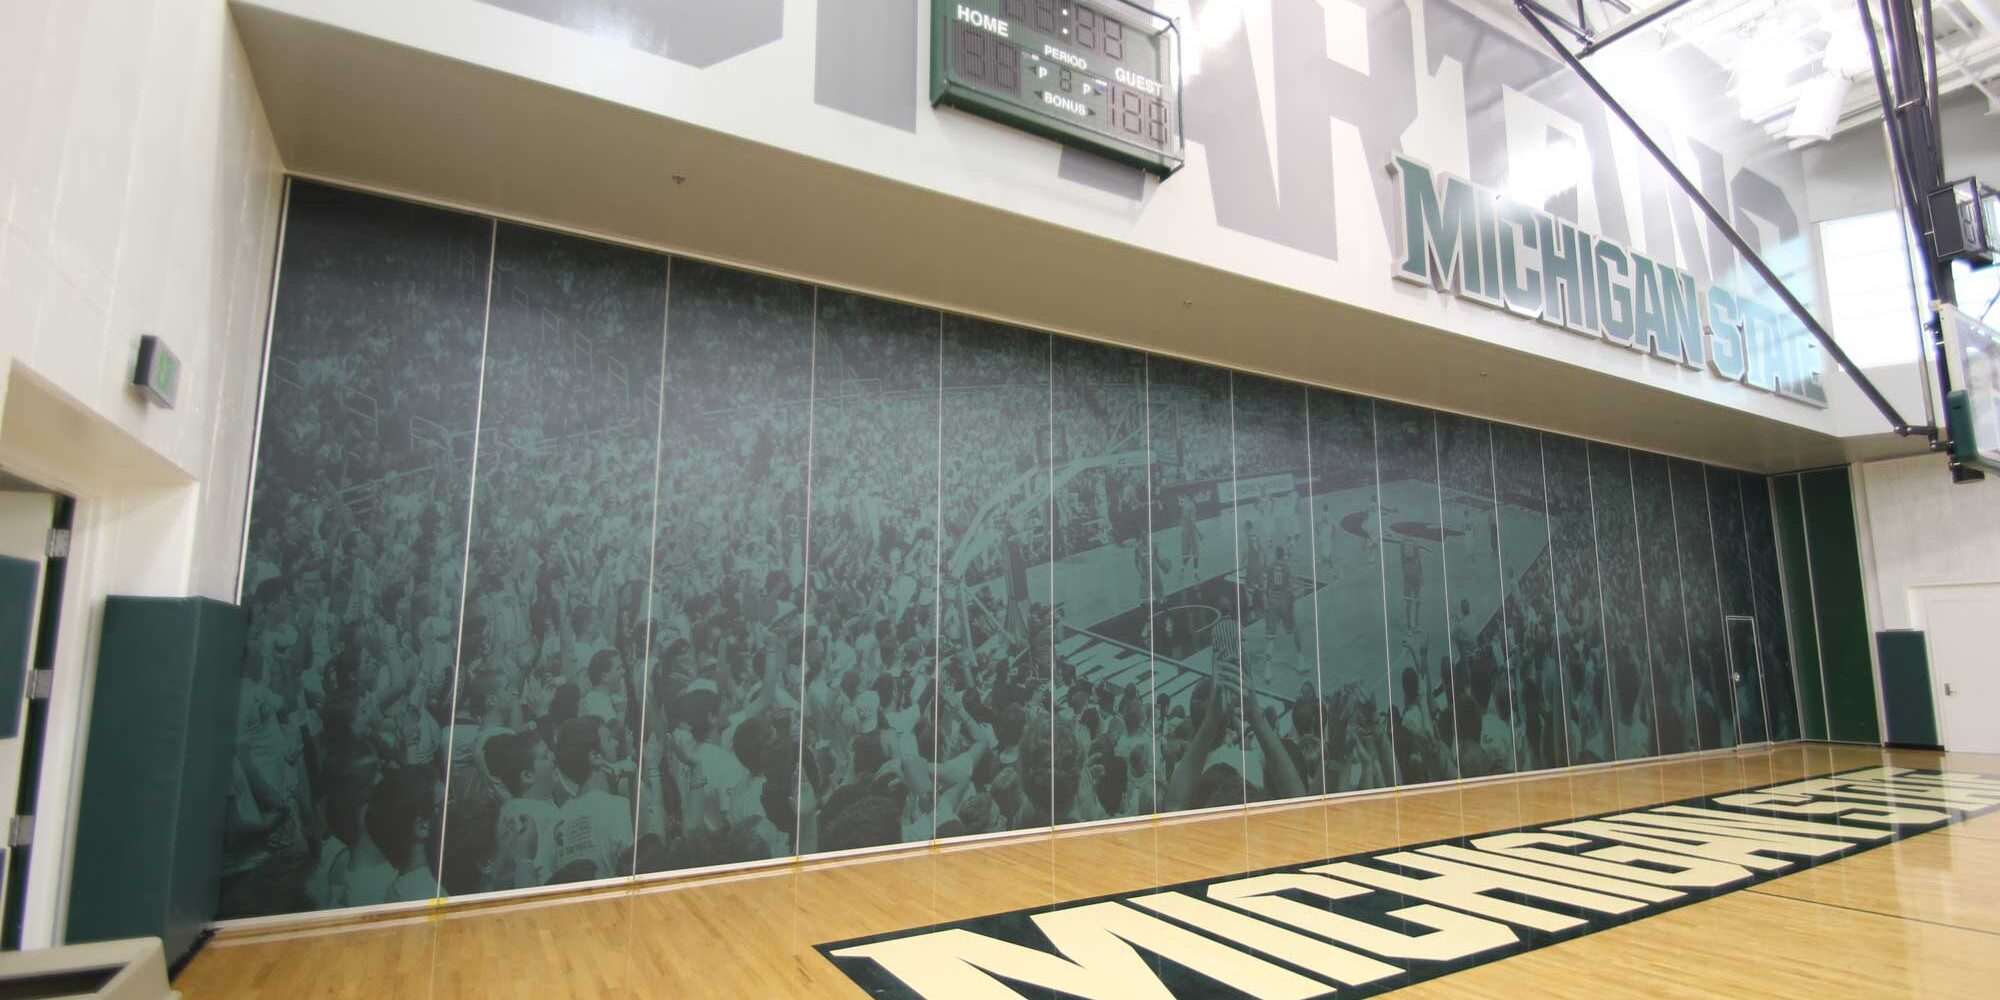 墙图形显示在密歇根州立大学篮球比赛